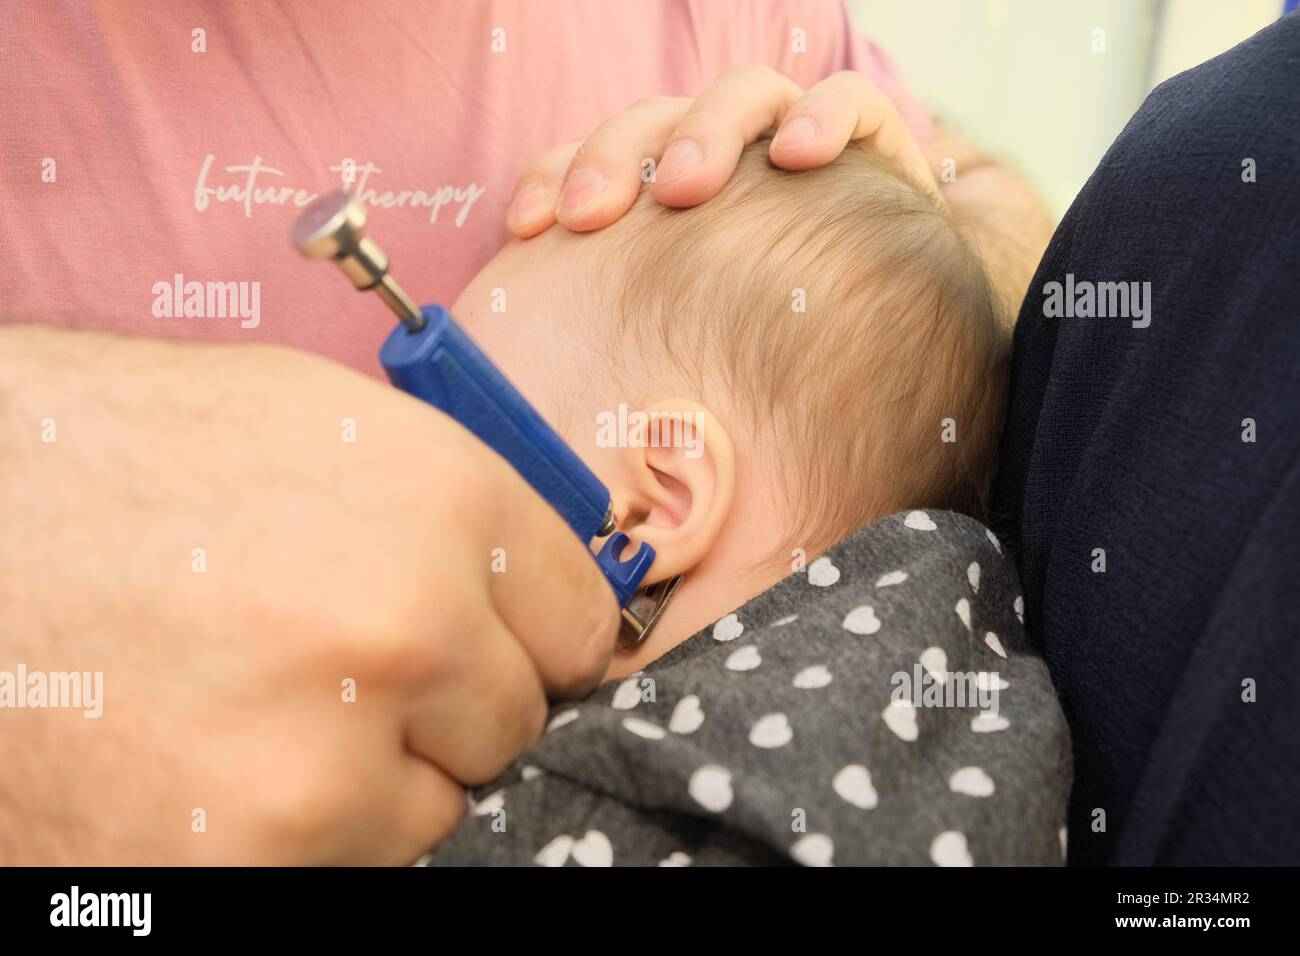 Ein kleines Mädchen, das mit einer speziellen Piercingpistole im Juweliergeschäft Ohrenpiercing macht. Stockfoto